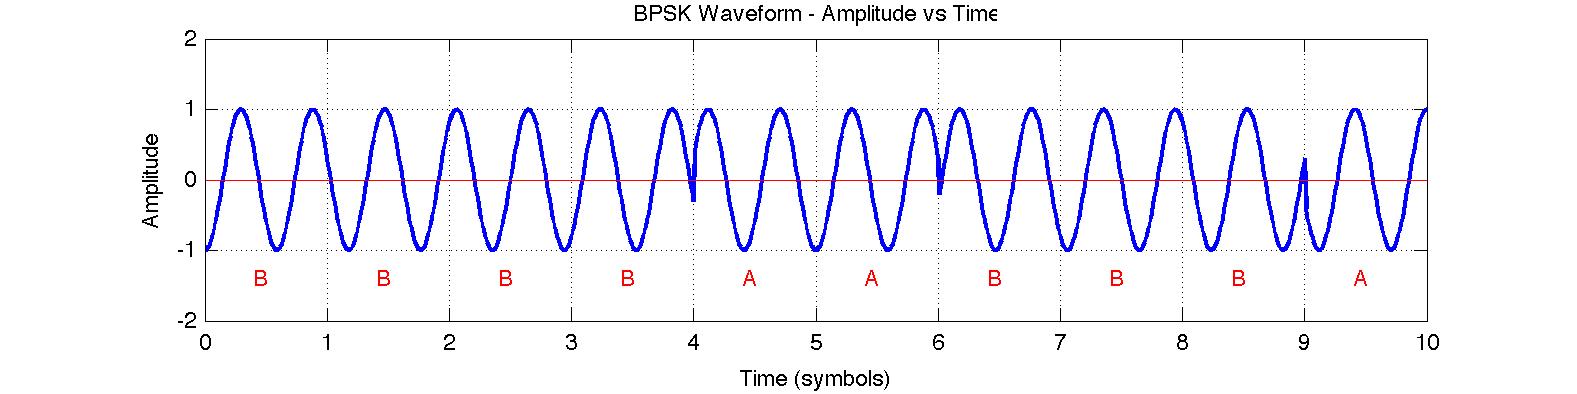 BPSK Waveform